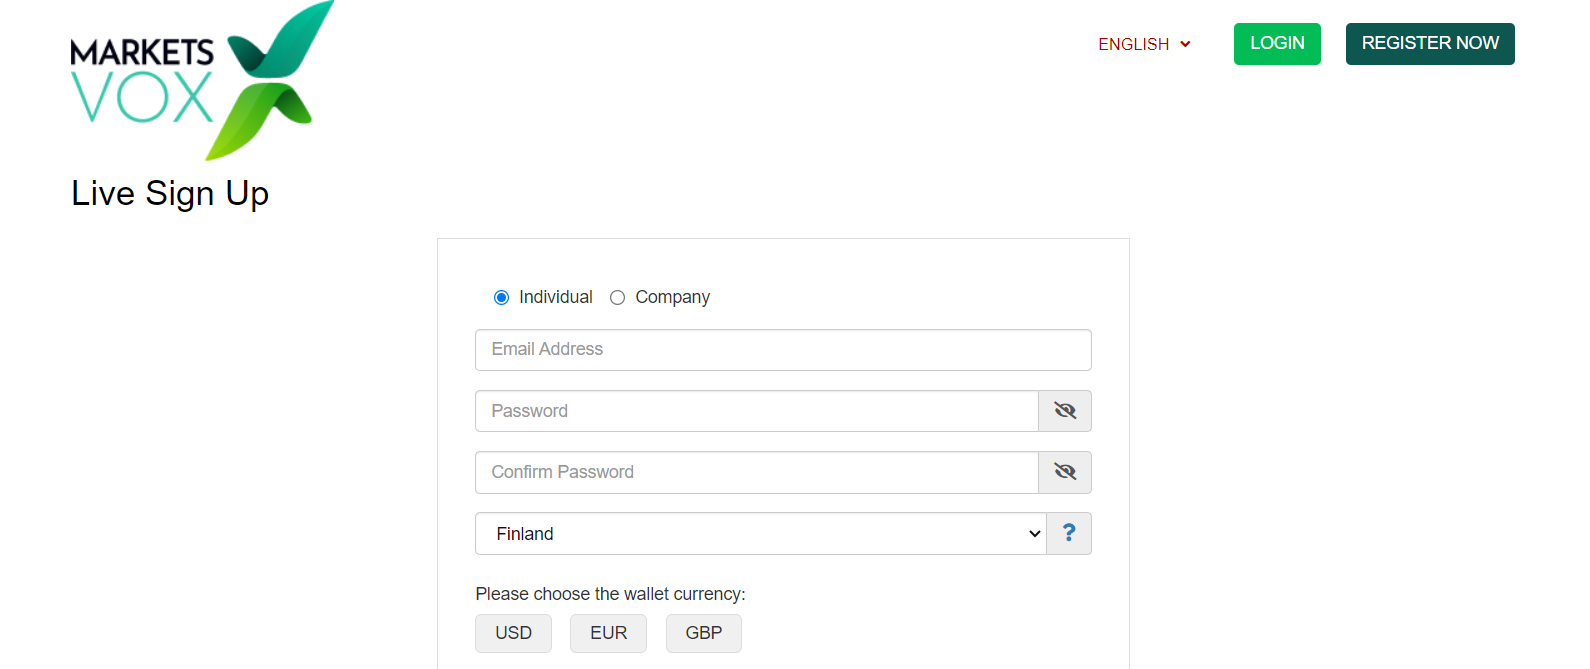 查看 ForexVox 的用户账户 - 填写          注册表